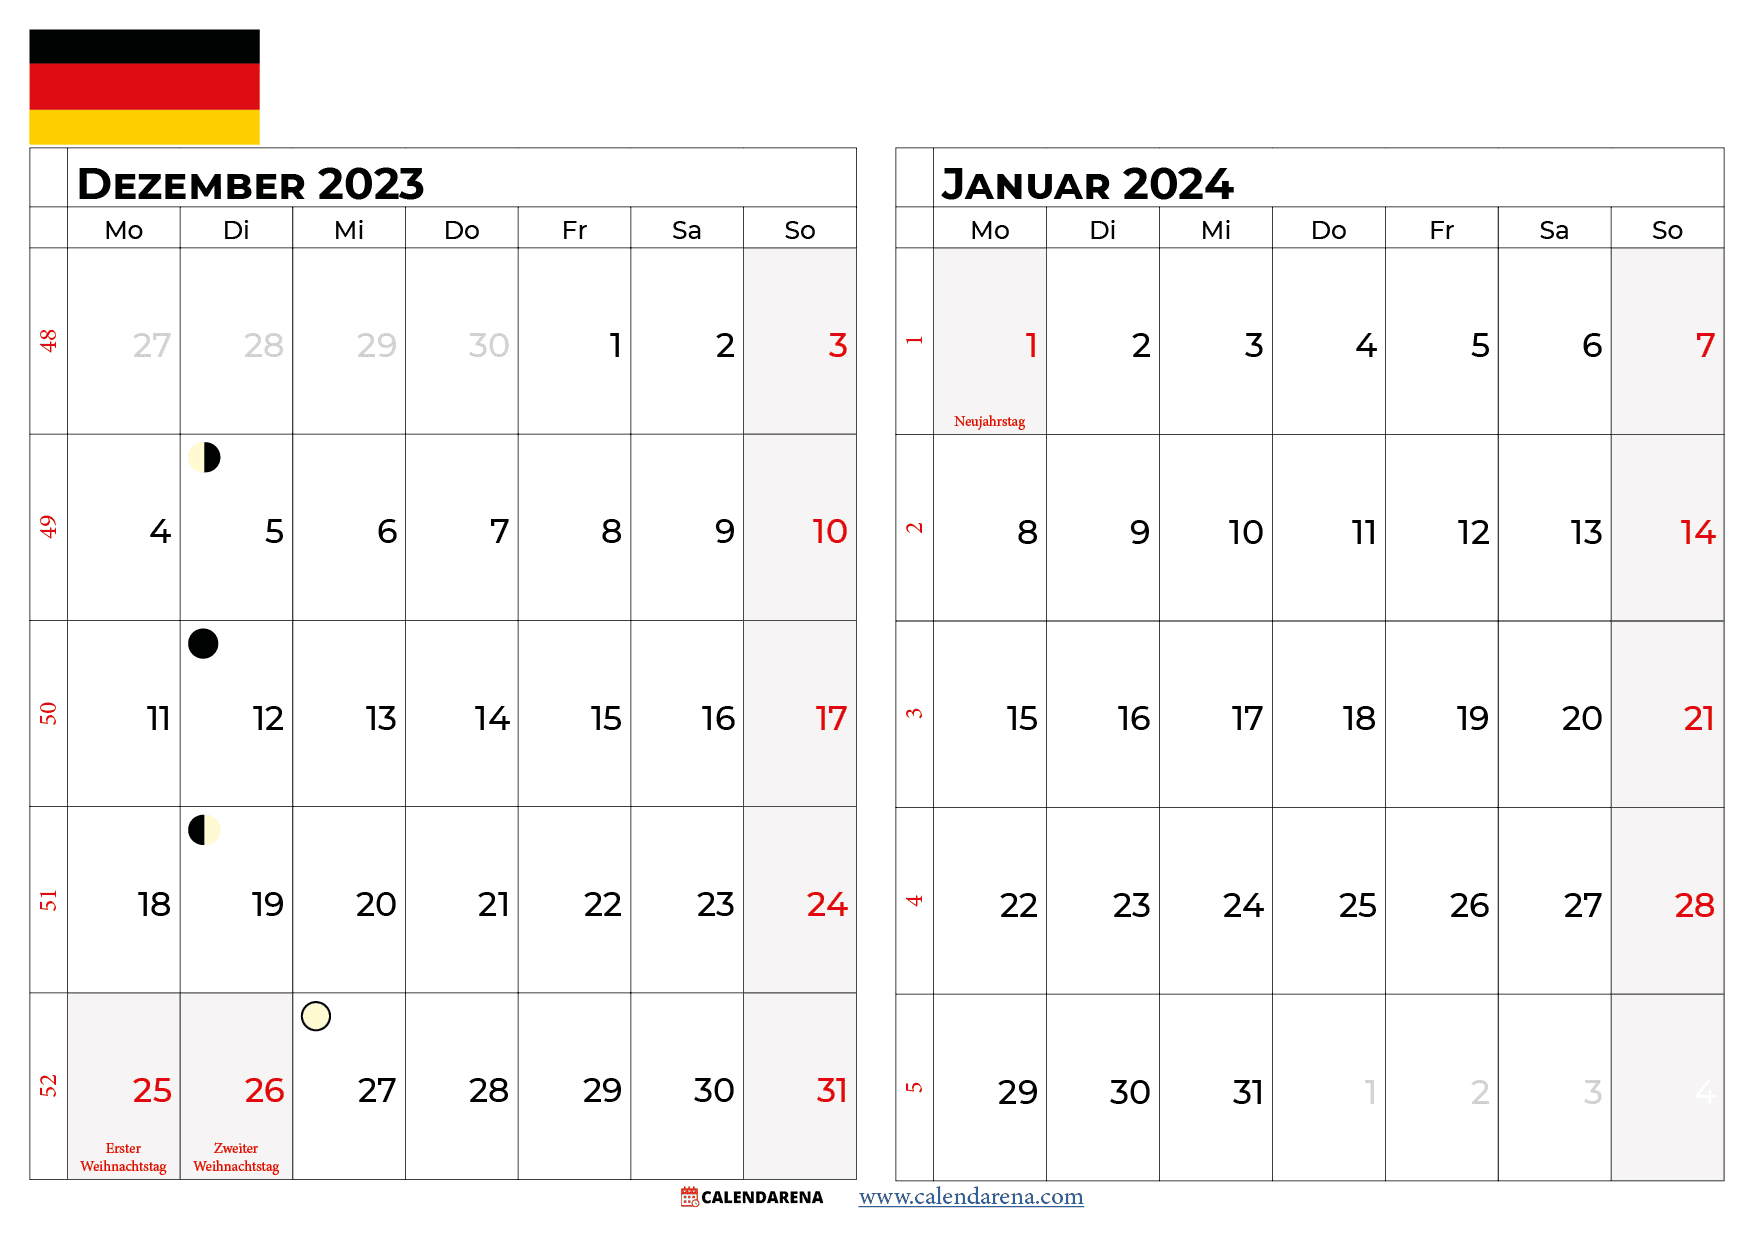 dezember 2023 - Januar 2024 Deutschland